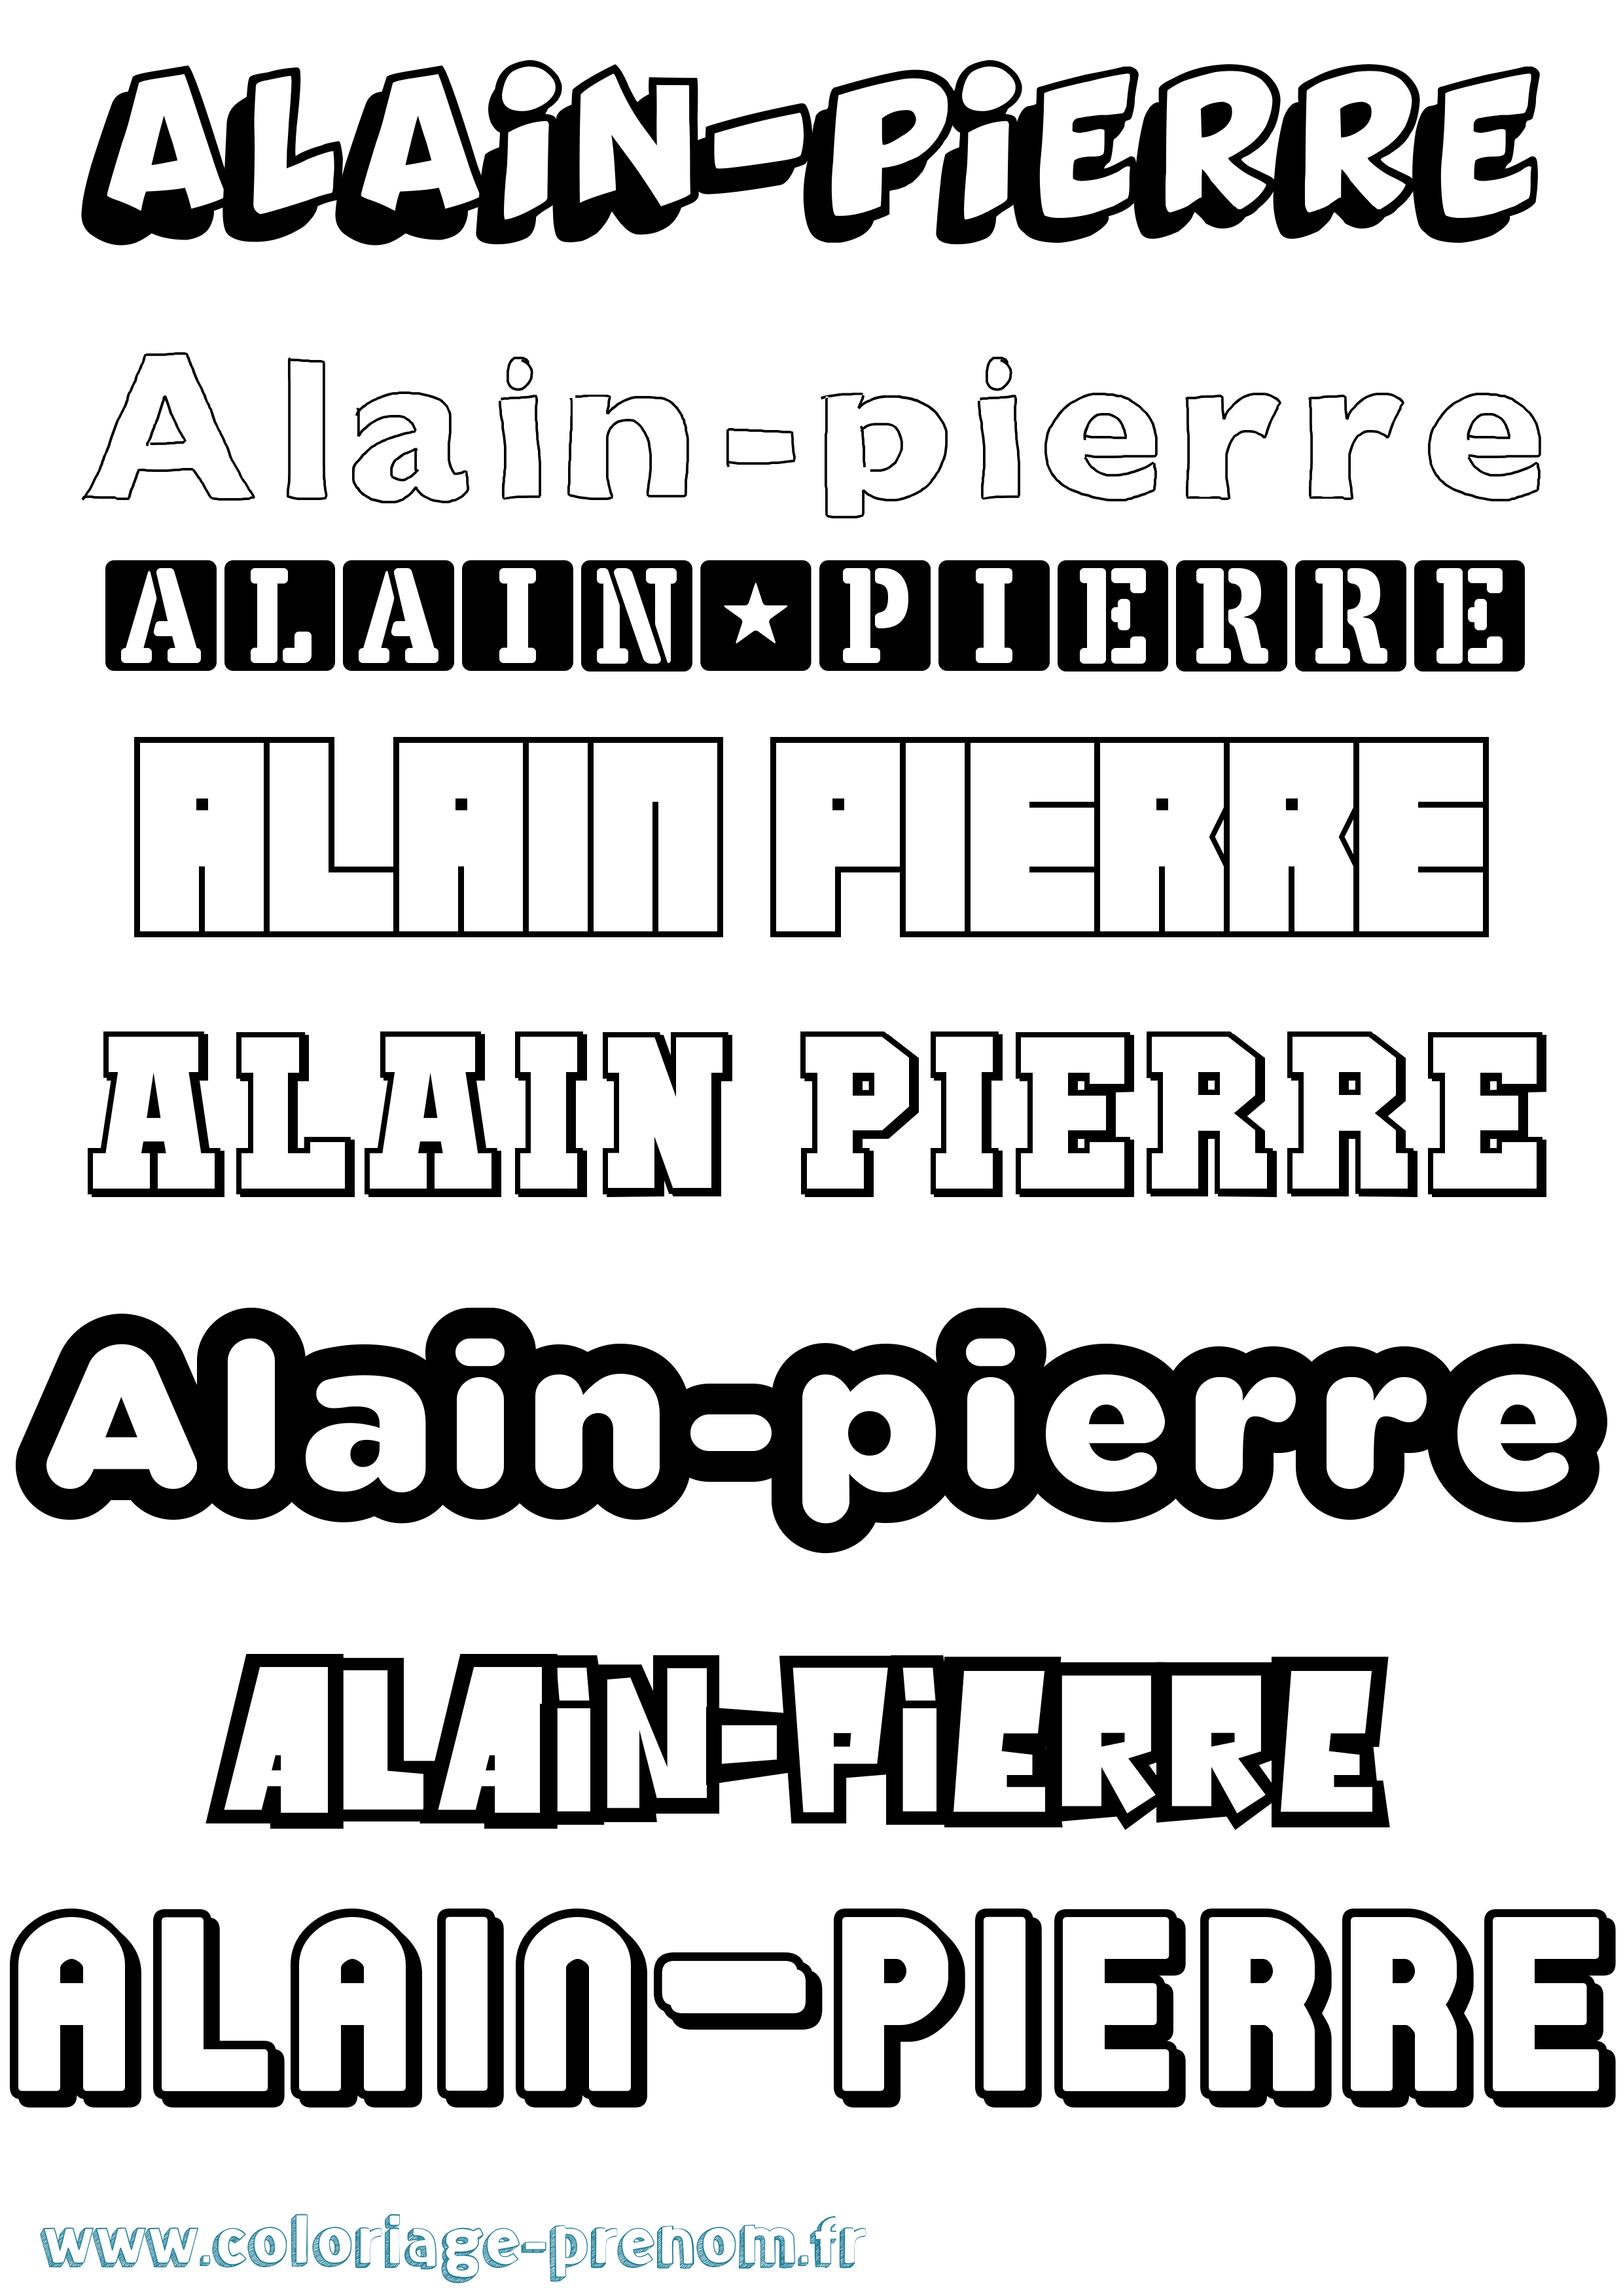 Coloriage prénom Alain-Pierre Simple